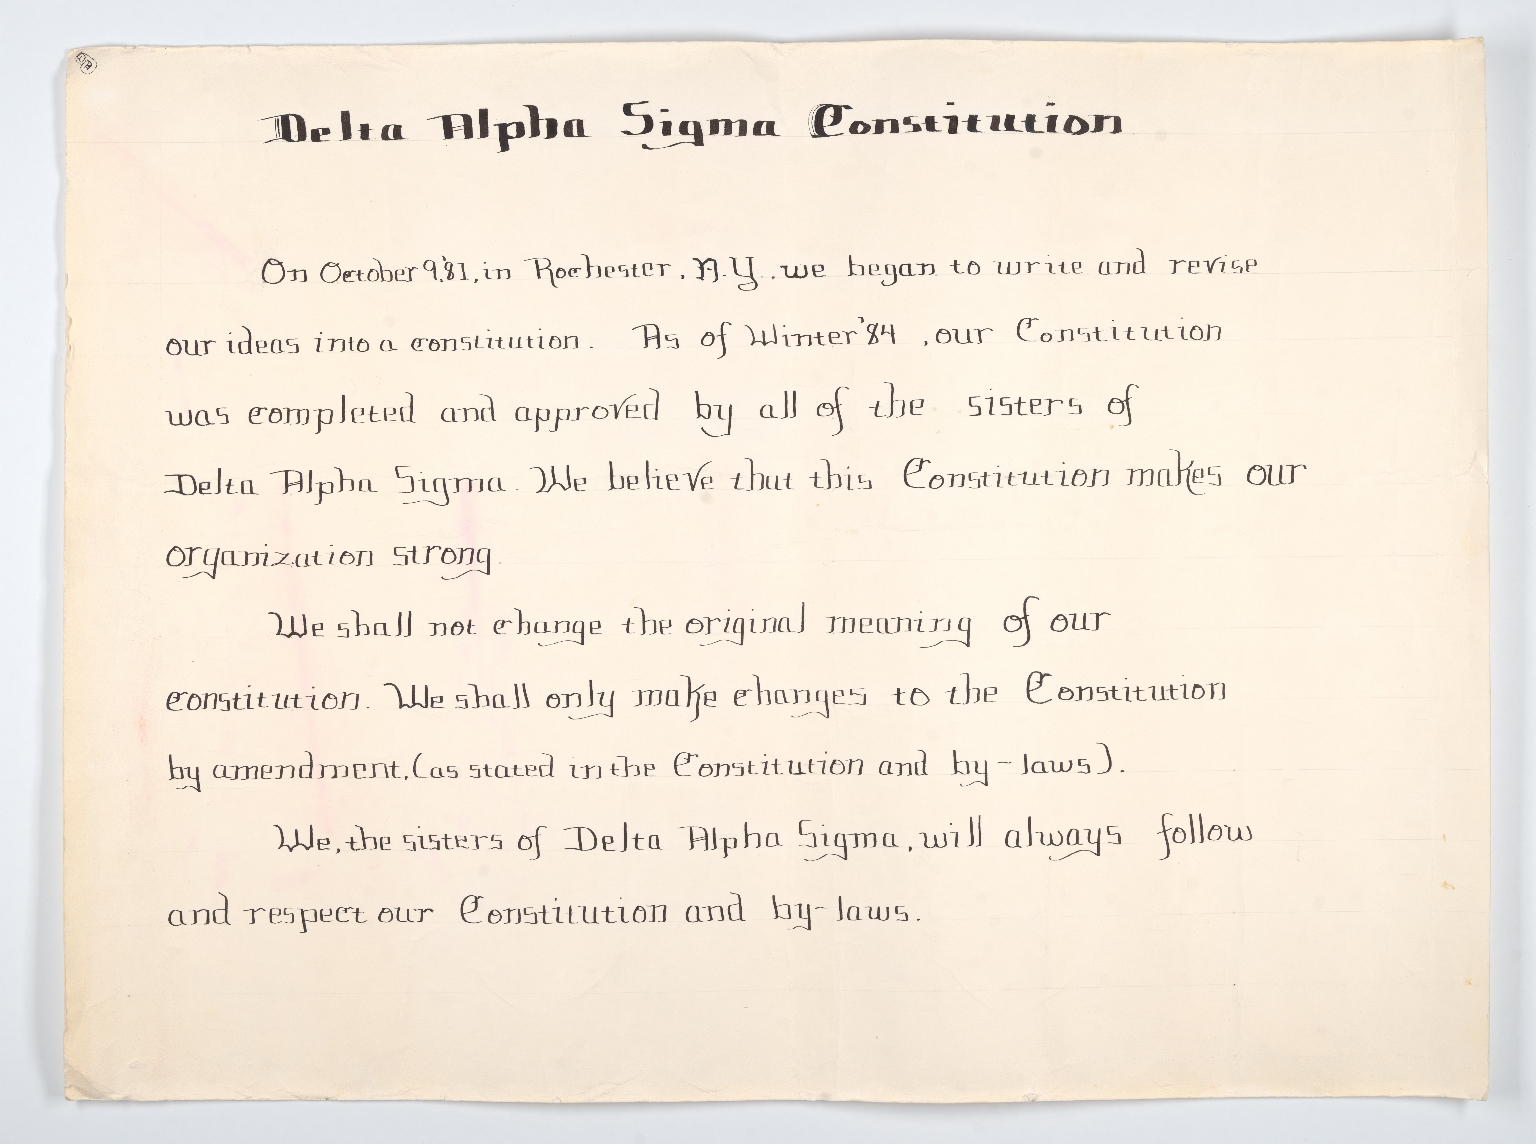 Delta Alpha Sigma Constitution